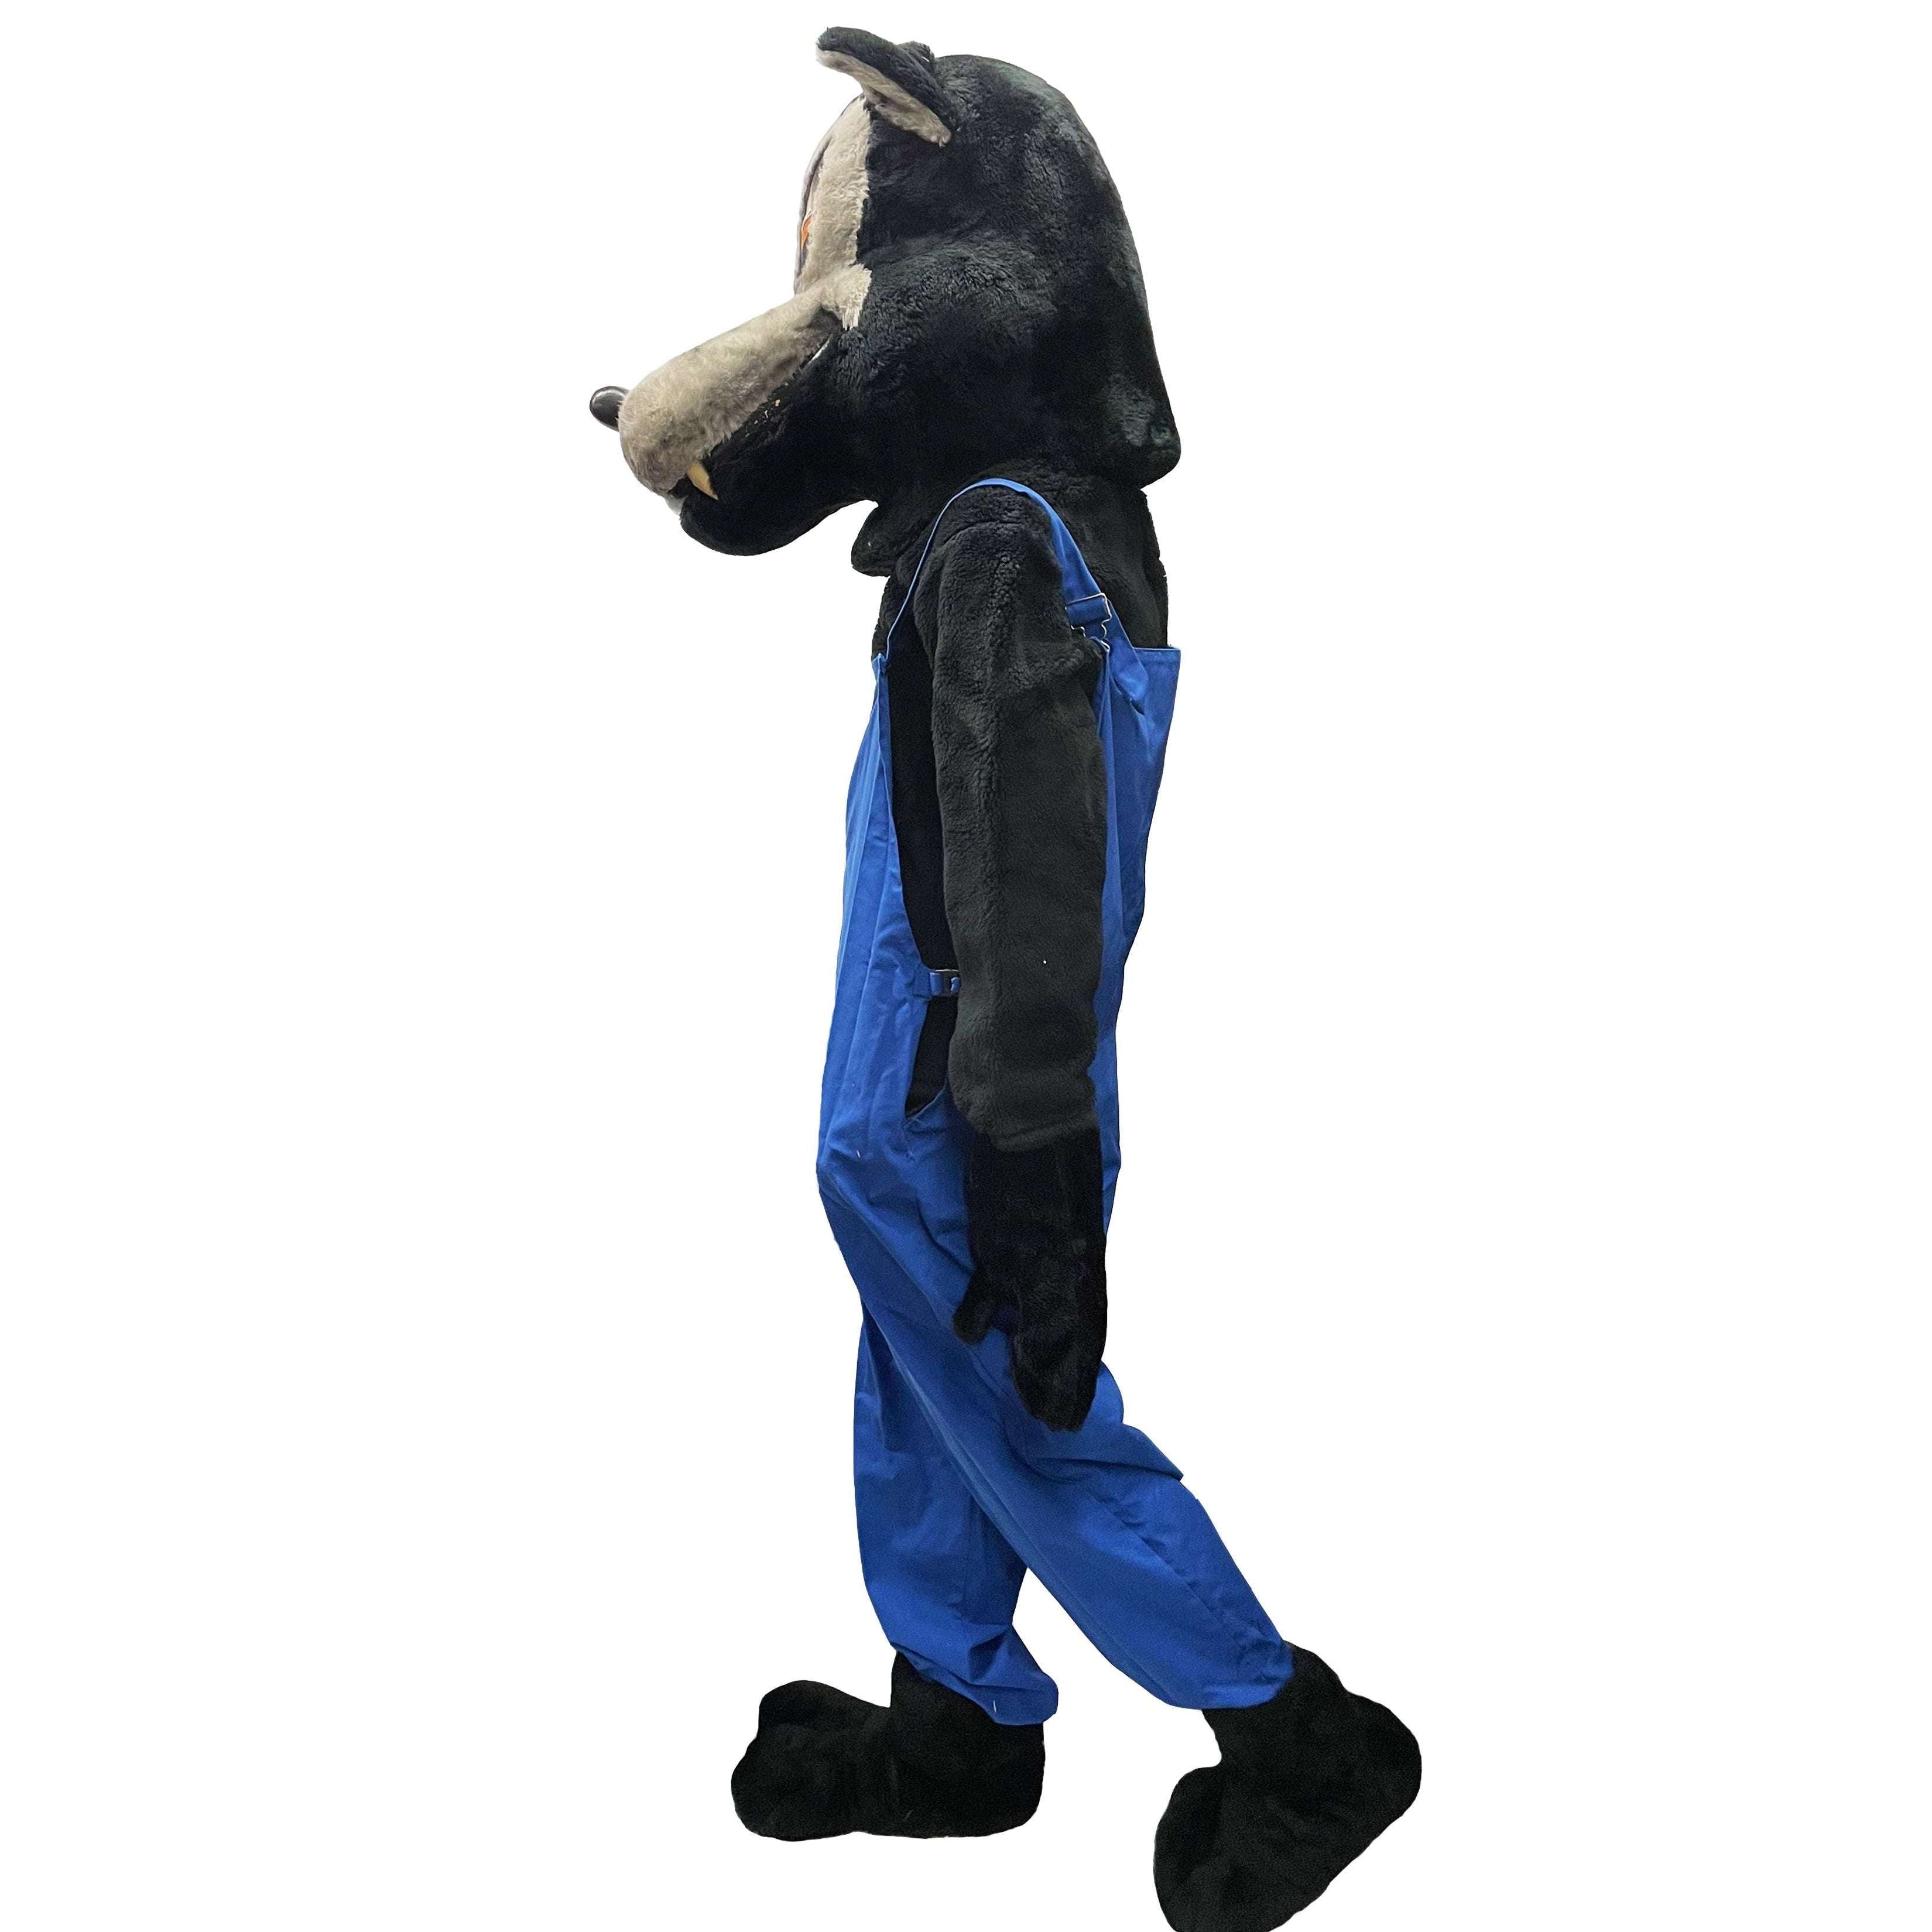 Big Bad Wolf Mascot Adult Costume